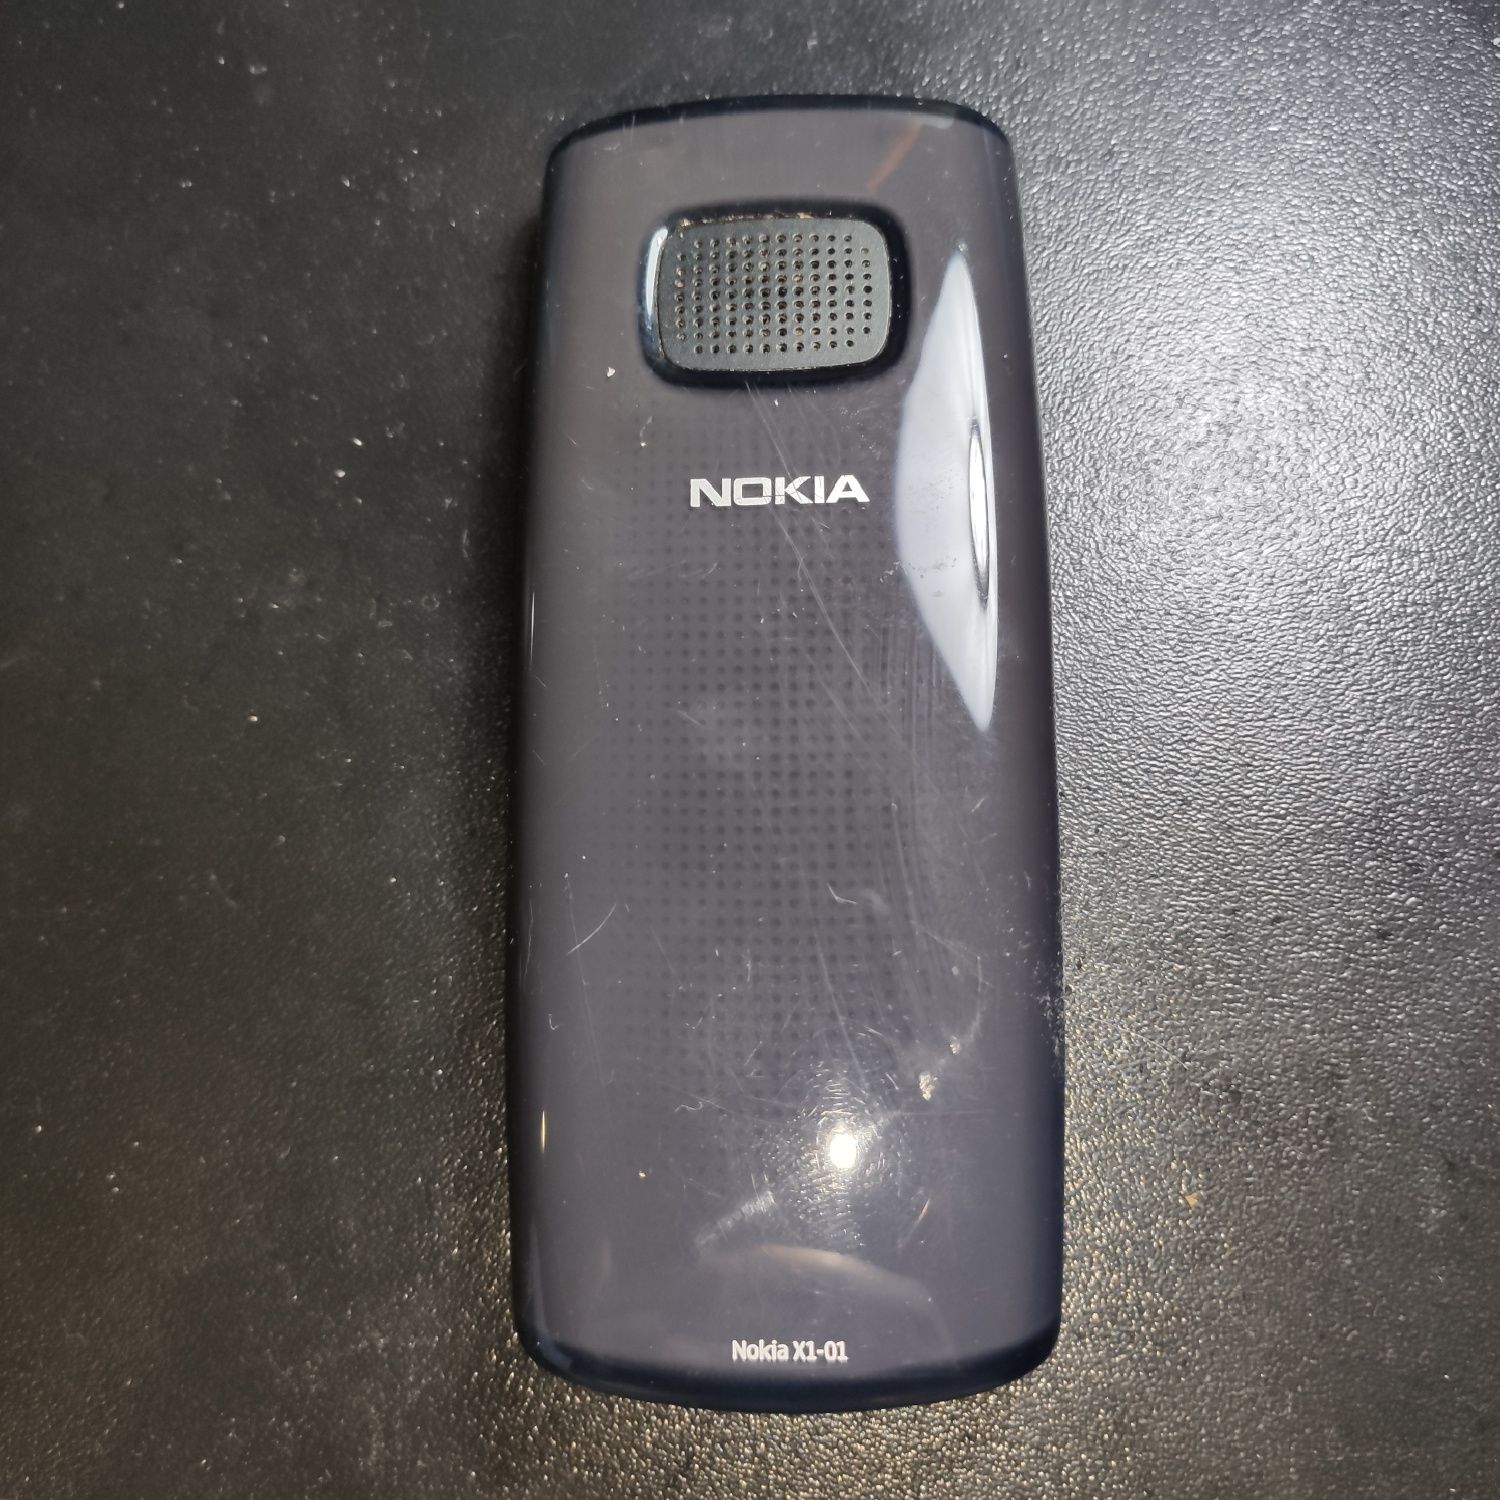 Nokia X1-01 dual sim desbloqueado com carregador